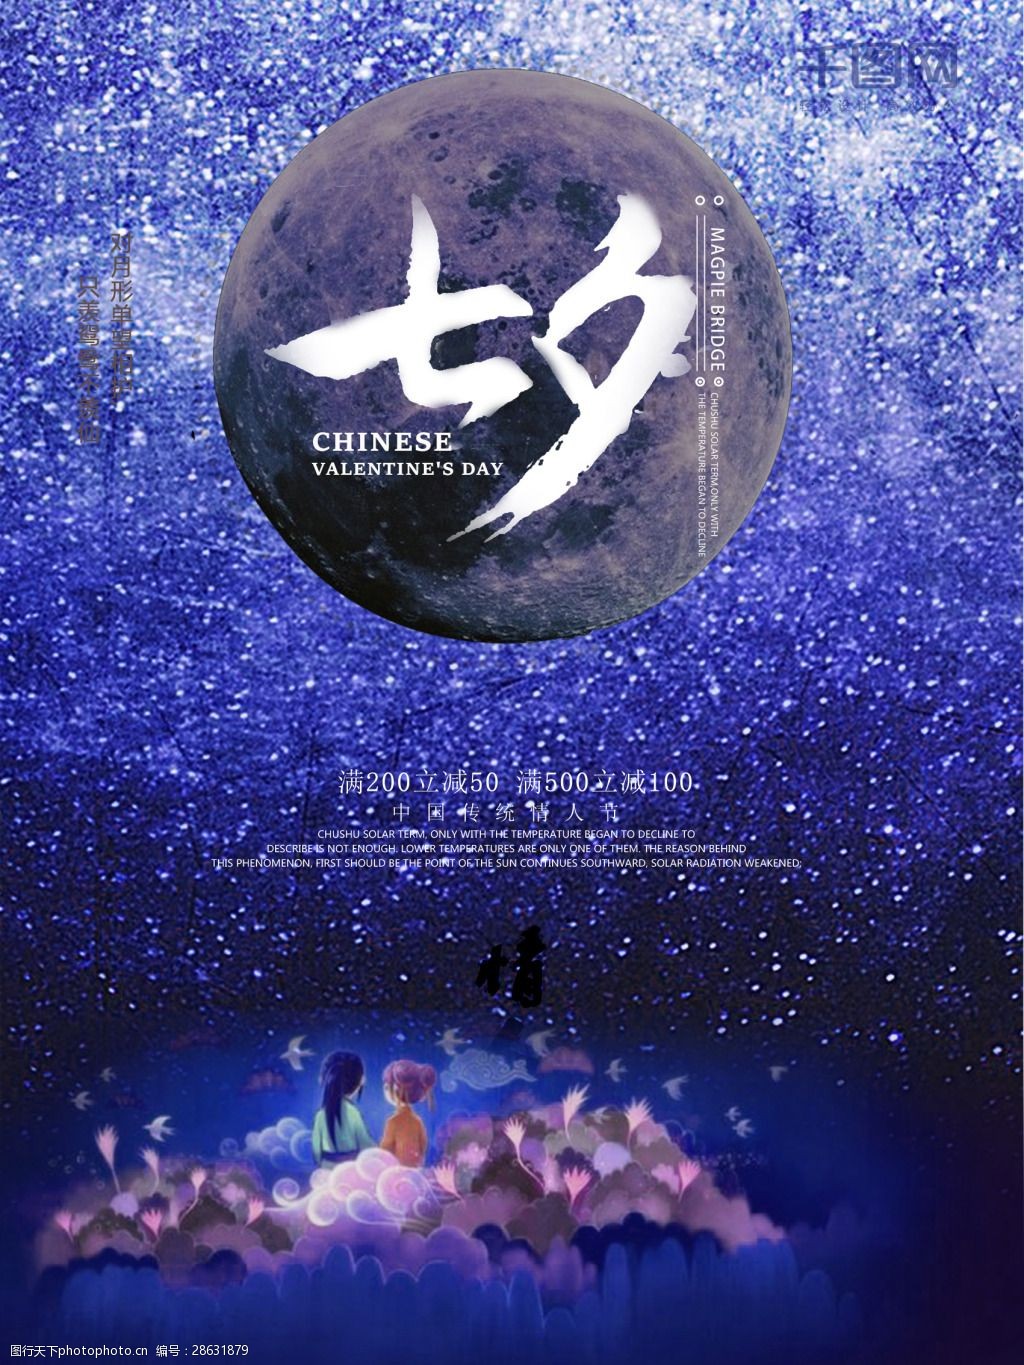 蓝色星球情人节宣传海报5 蓝色 星球 情人节 七夕 节日 星空 爱情